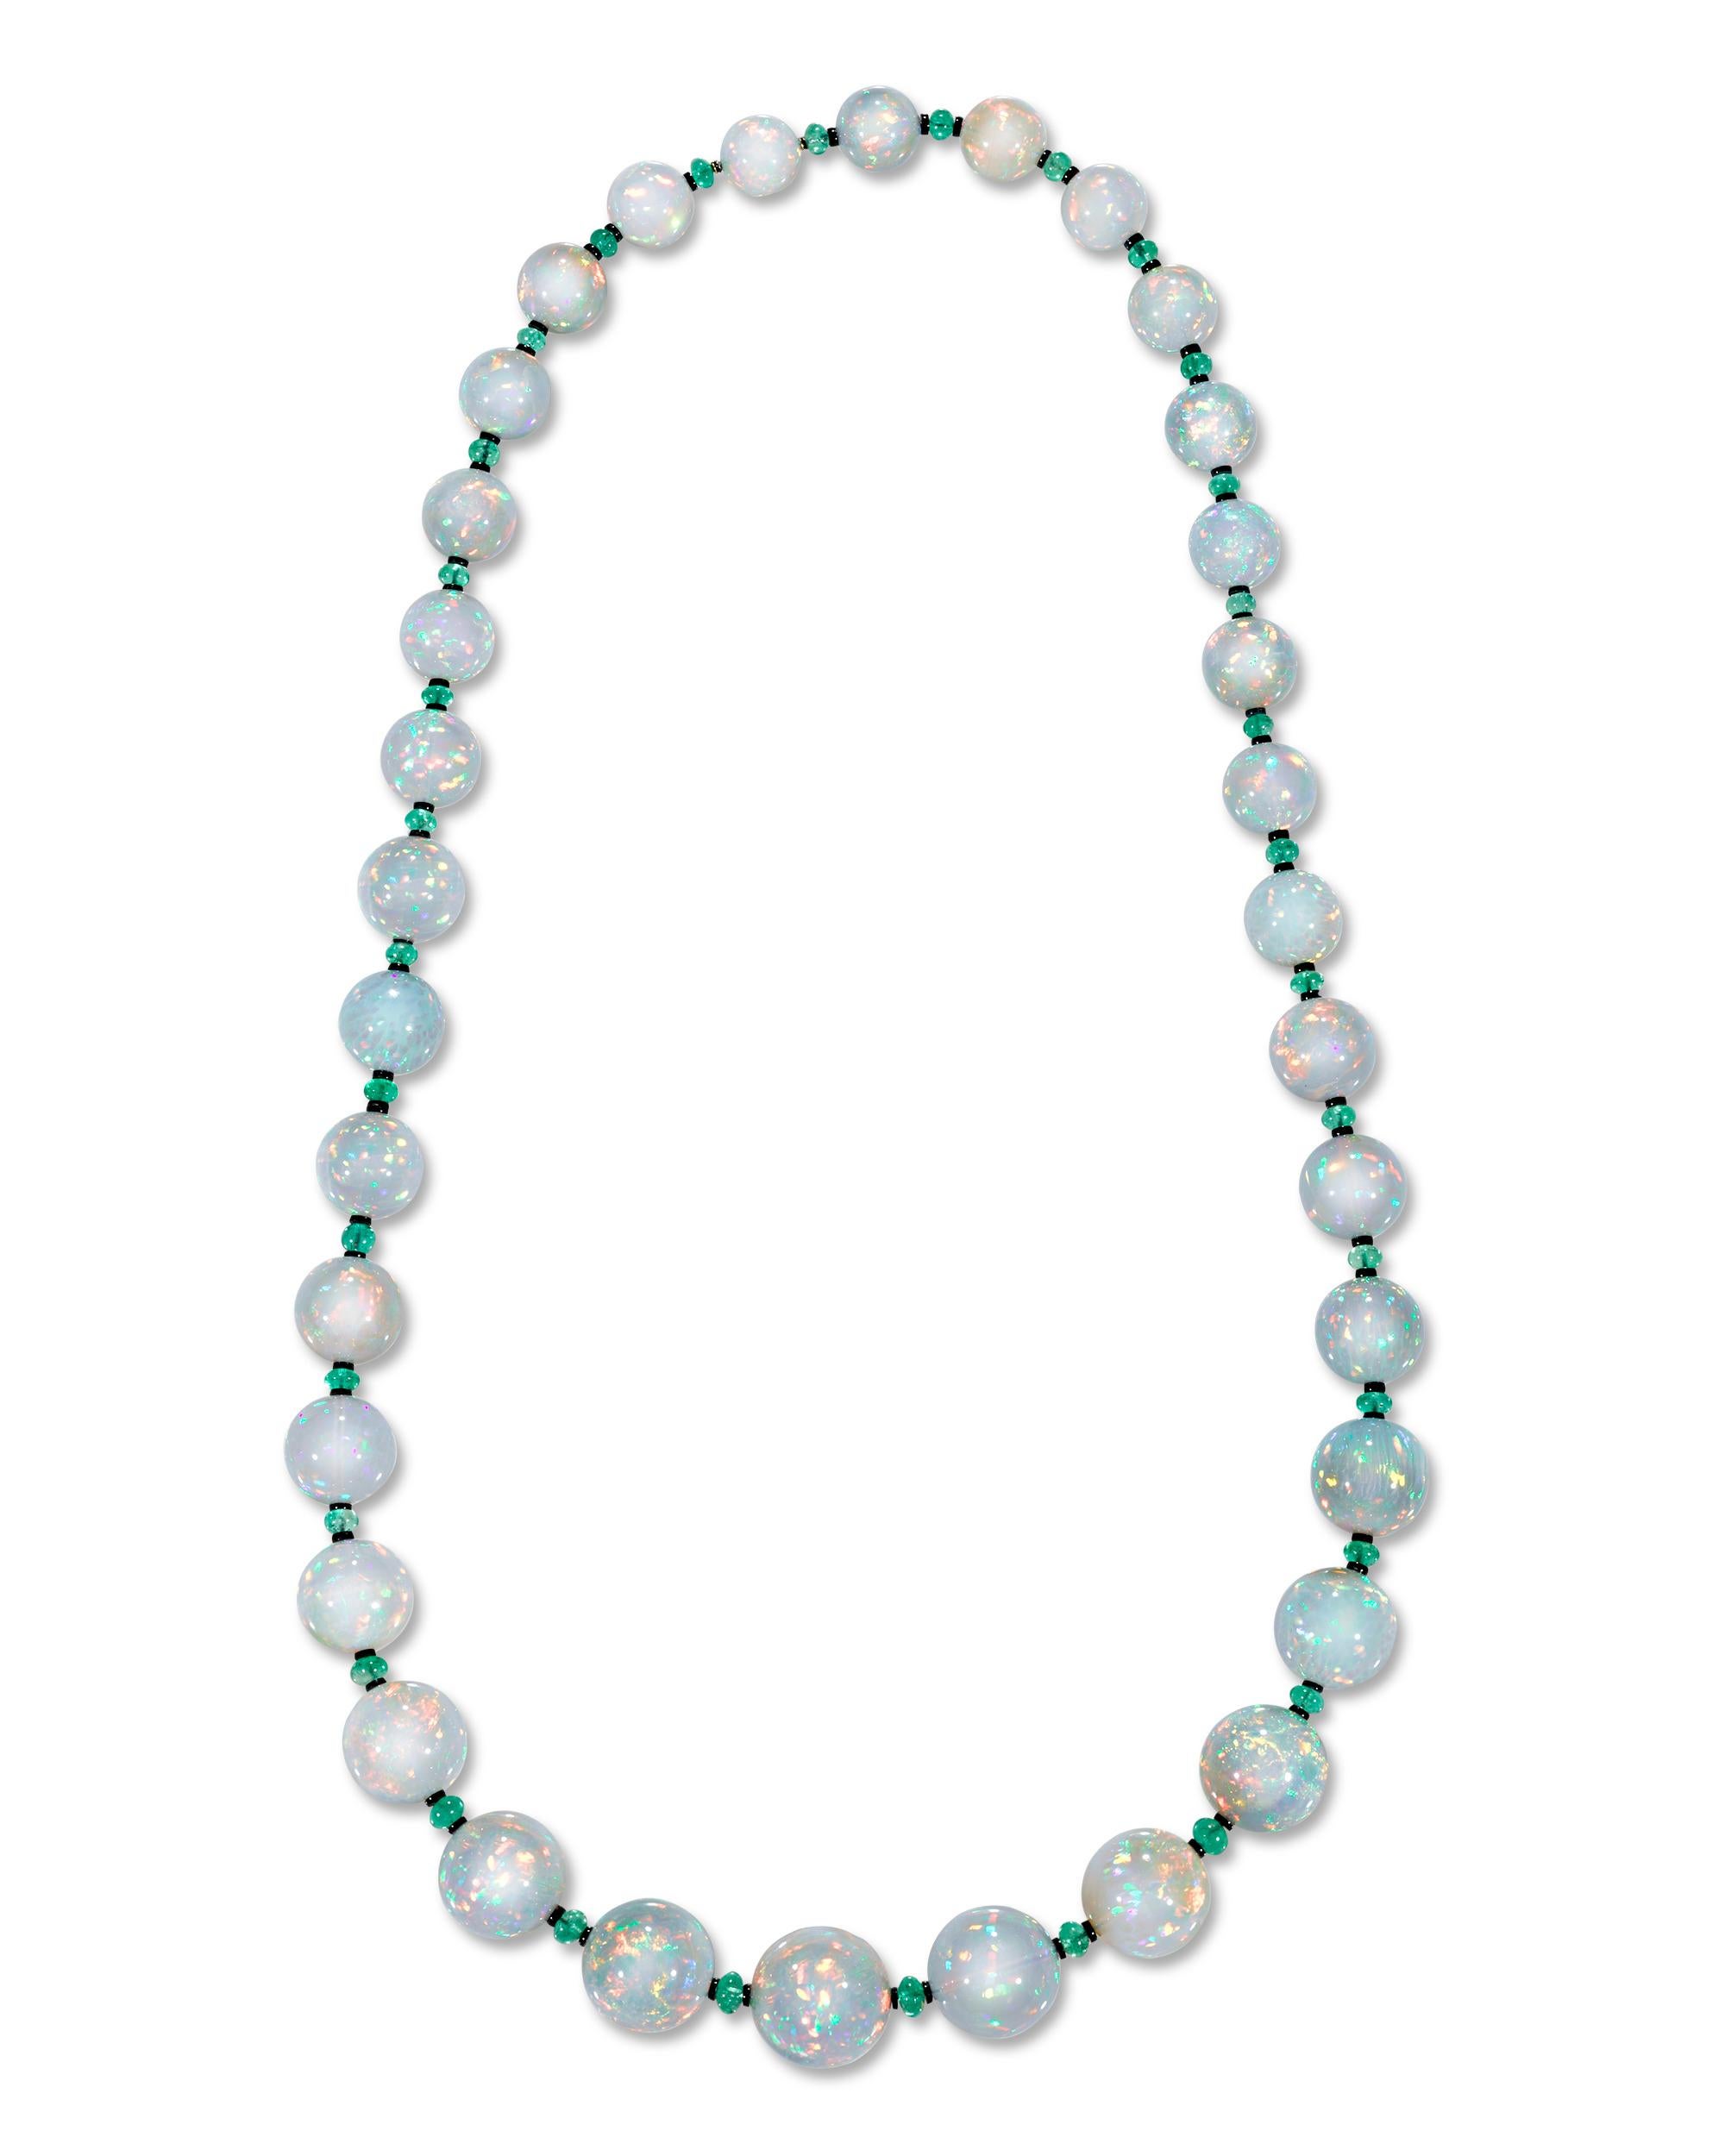 Trente-quatre perles d'opale massive d'une valeur totale d'environ 680,00 carats sont alignées sur la longueur de ce collier qui attire le regard. Les gemmes graduées sont d'une taille impressionnante et parfaitement assorties, chacune présentant un